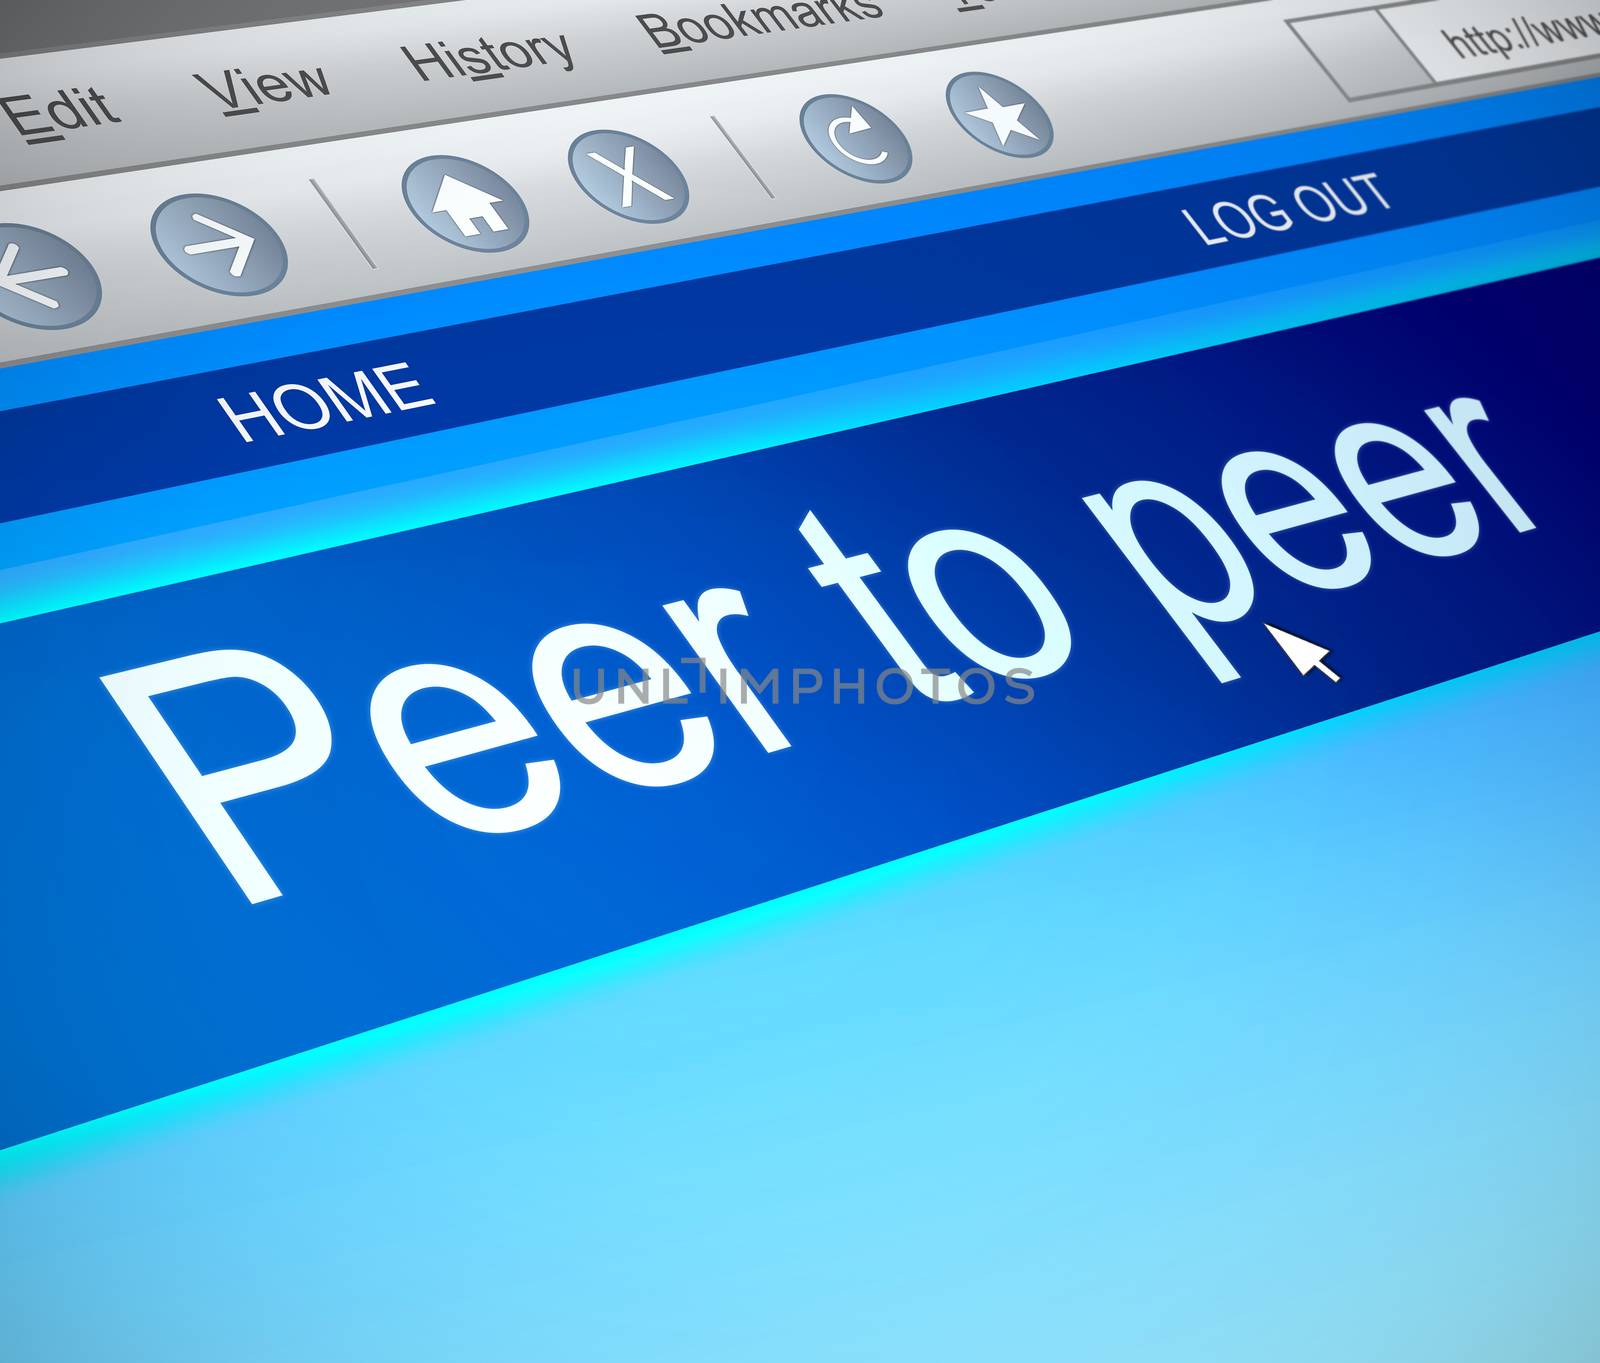 Peer to peer concept. by 72soul